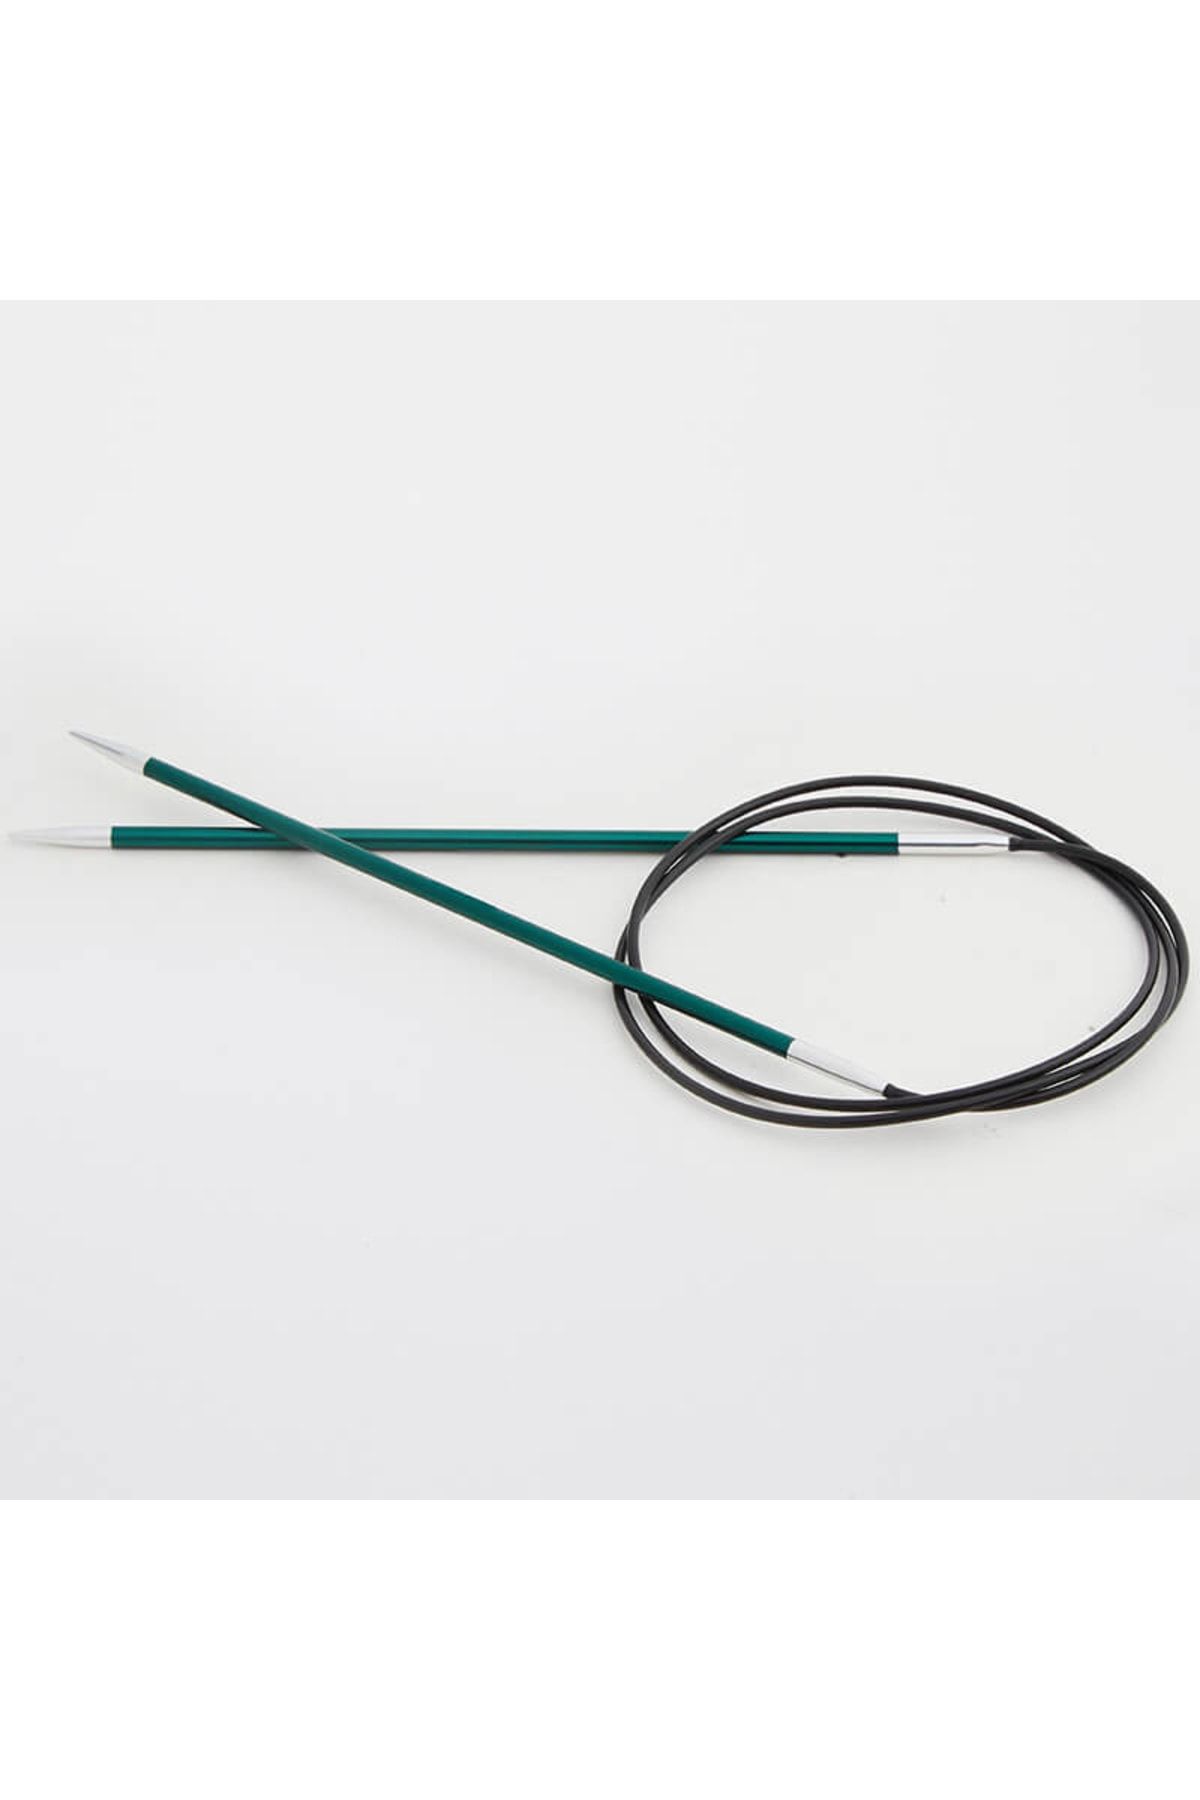 Knitpro Zing Sabit Misinalı Şiş 100cm / 3,00mm